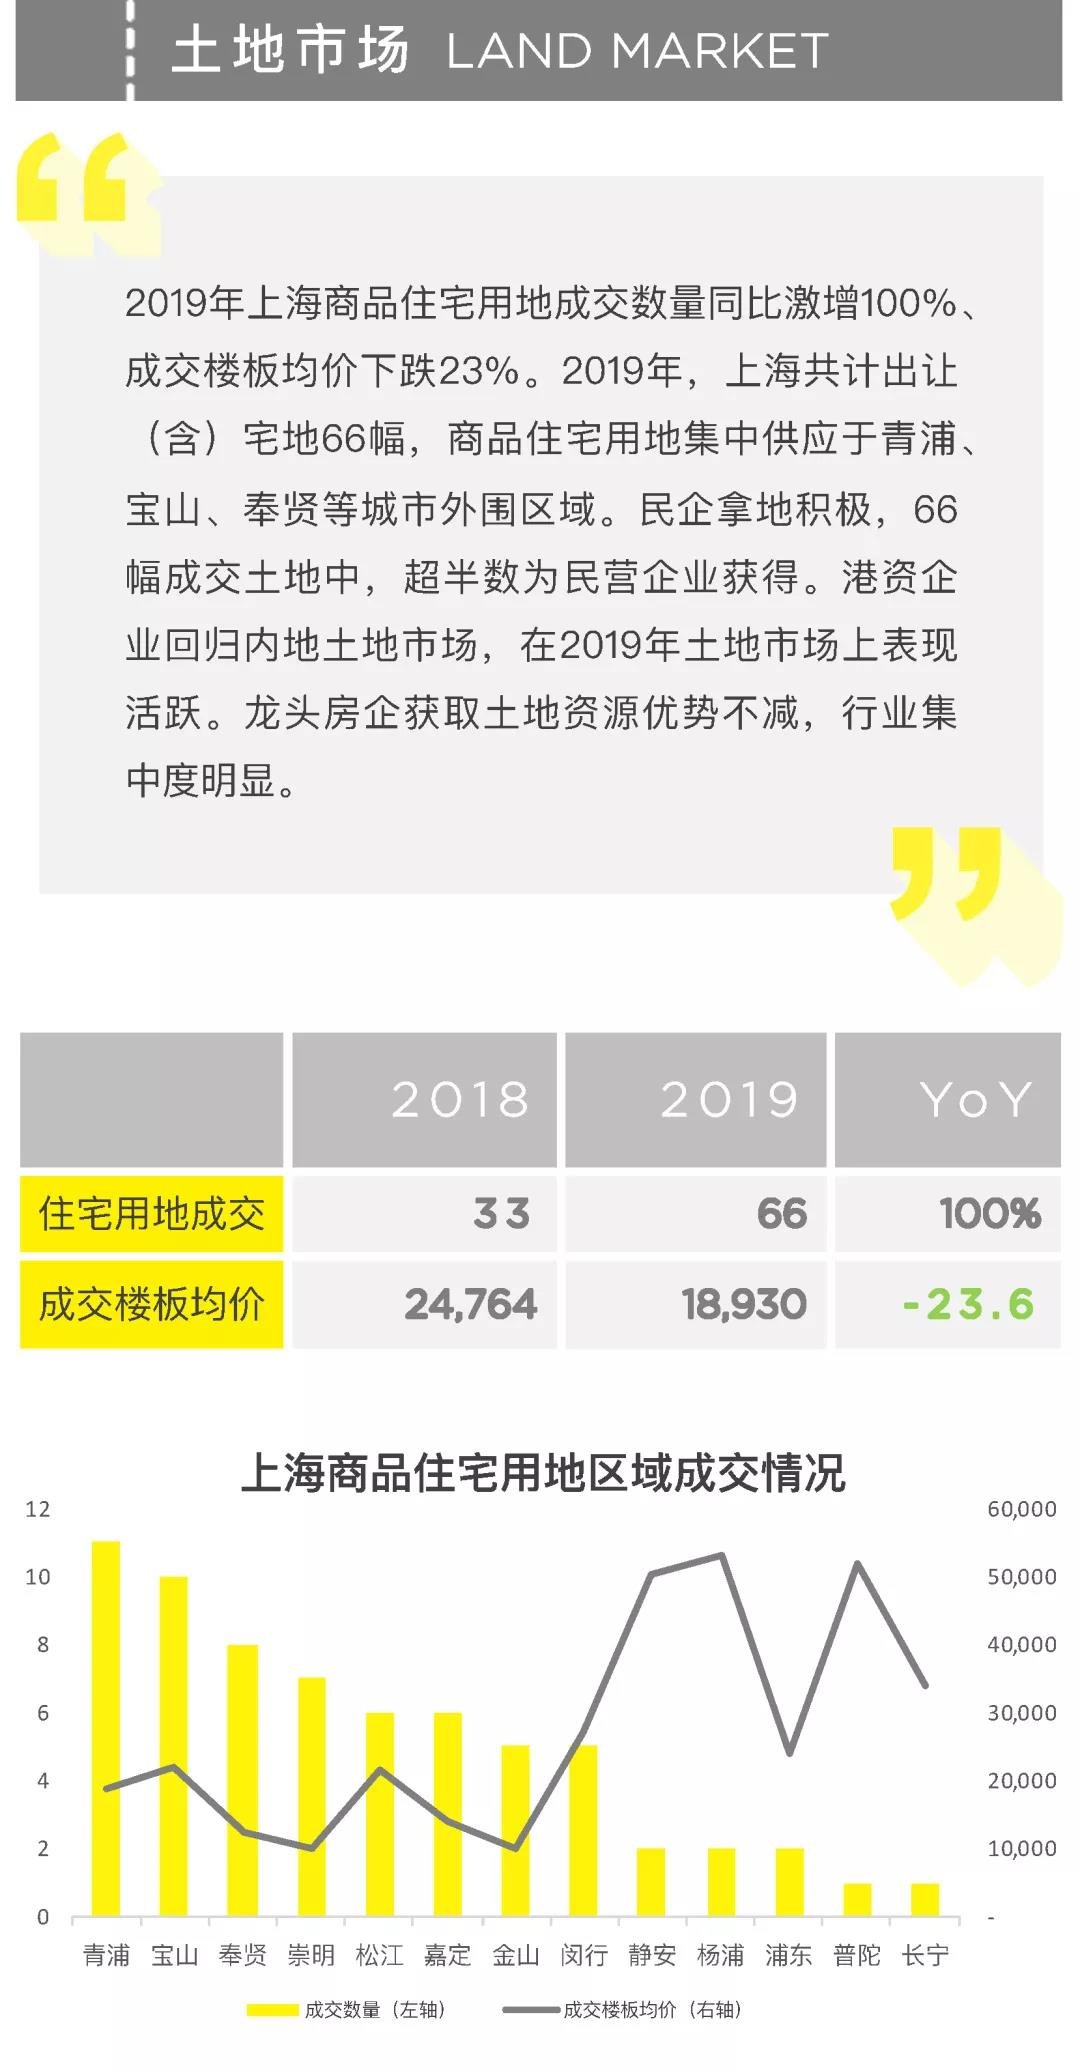 2019 年报 | Savills RS上海高端住宅市场年报